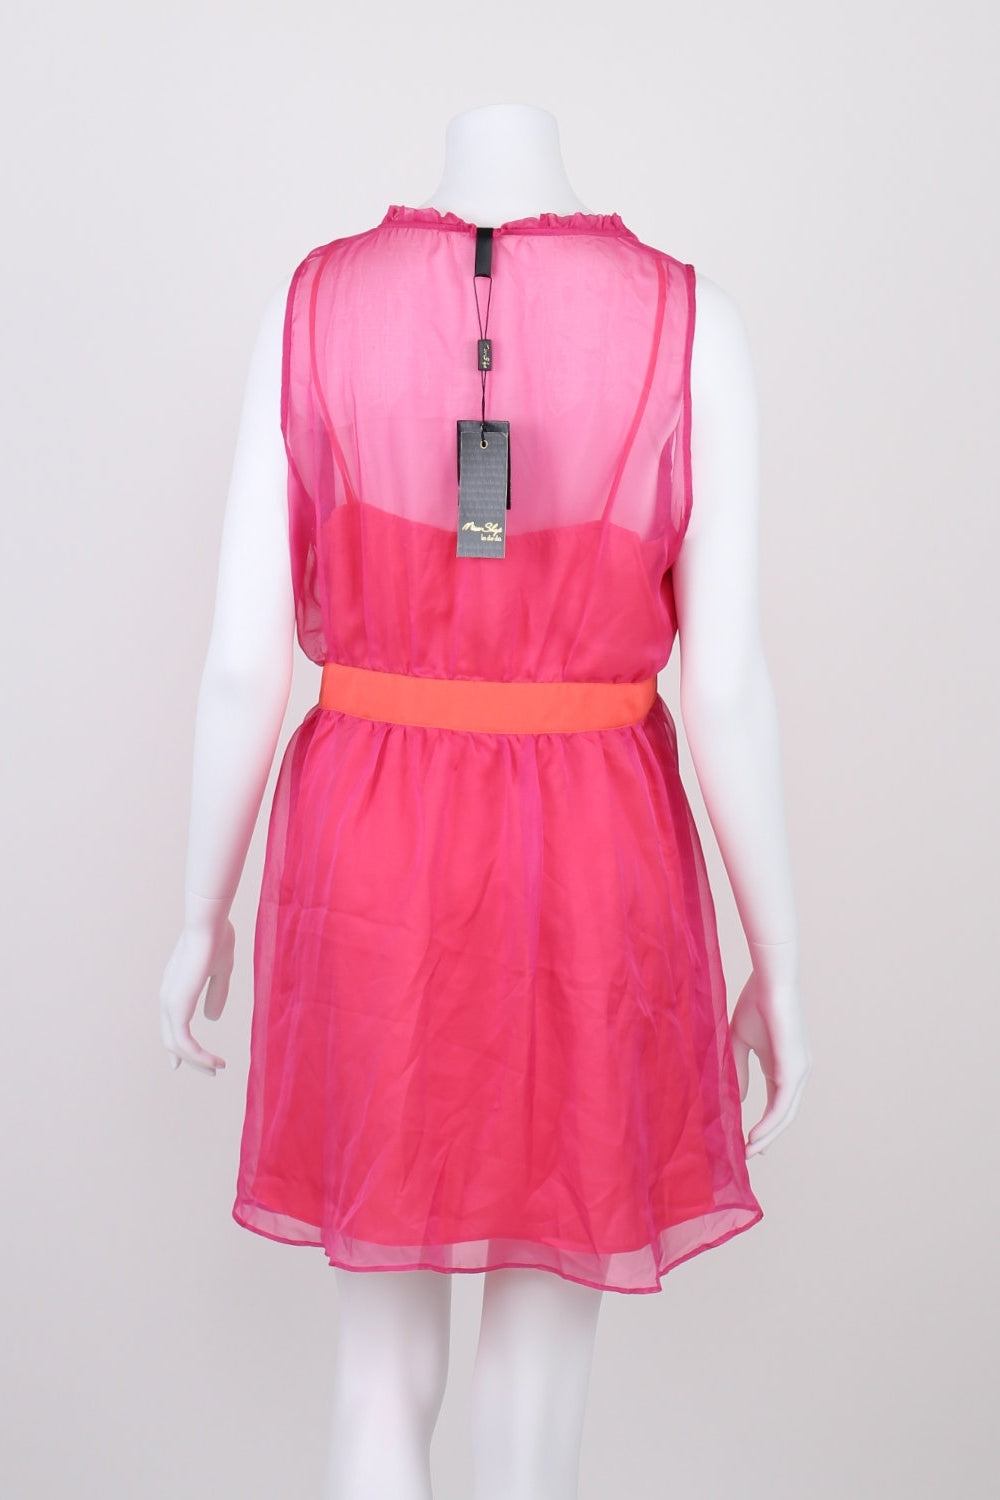 Miss Shop Pink Sleeveless Button Front Dress 14